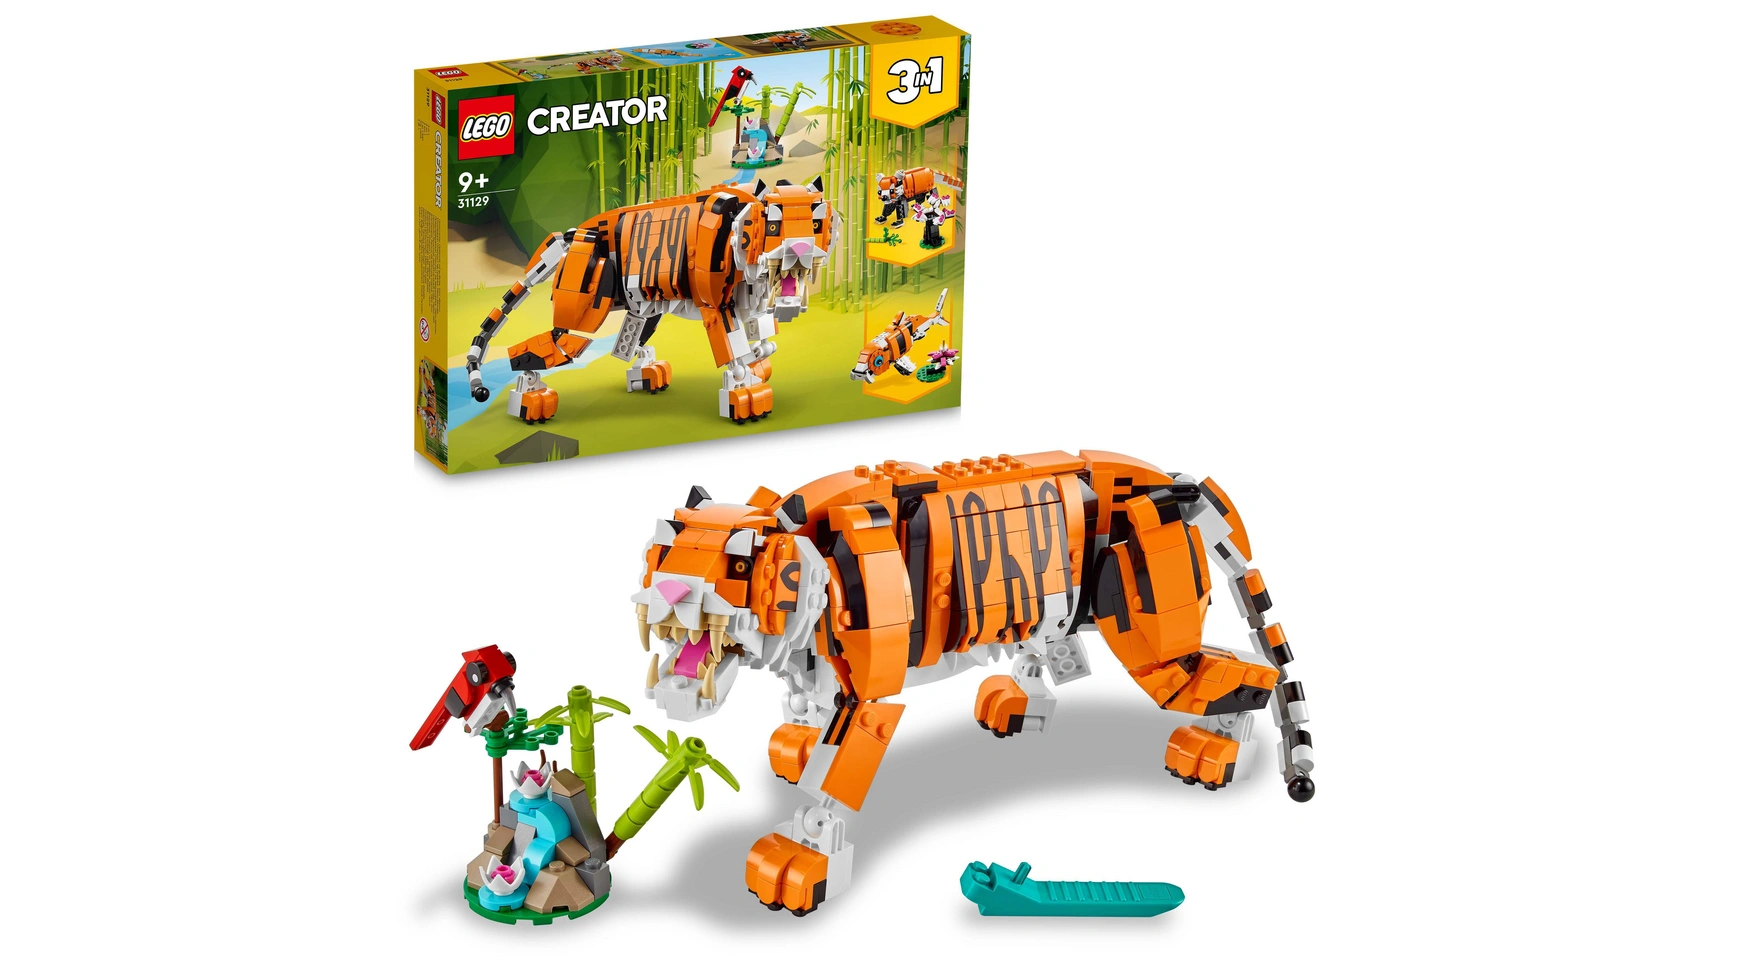 Lego Creator 3in1 Набор фигурок животного Величественный тигр для детей lego creator набор обитатели морских глубин 3 в 1 для детей от 7 лет и старше